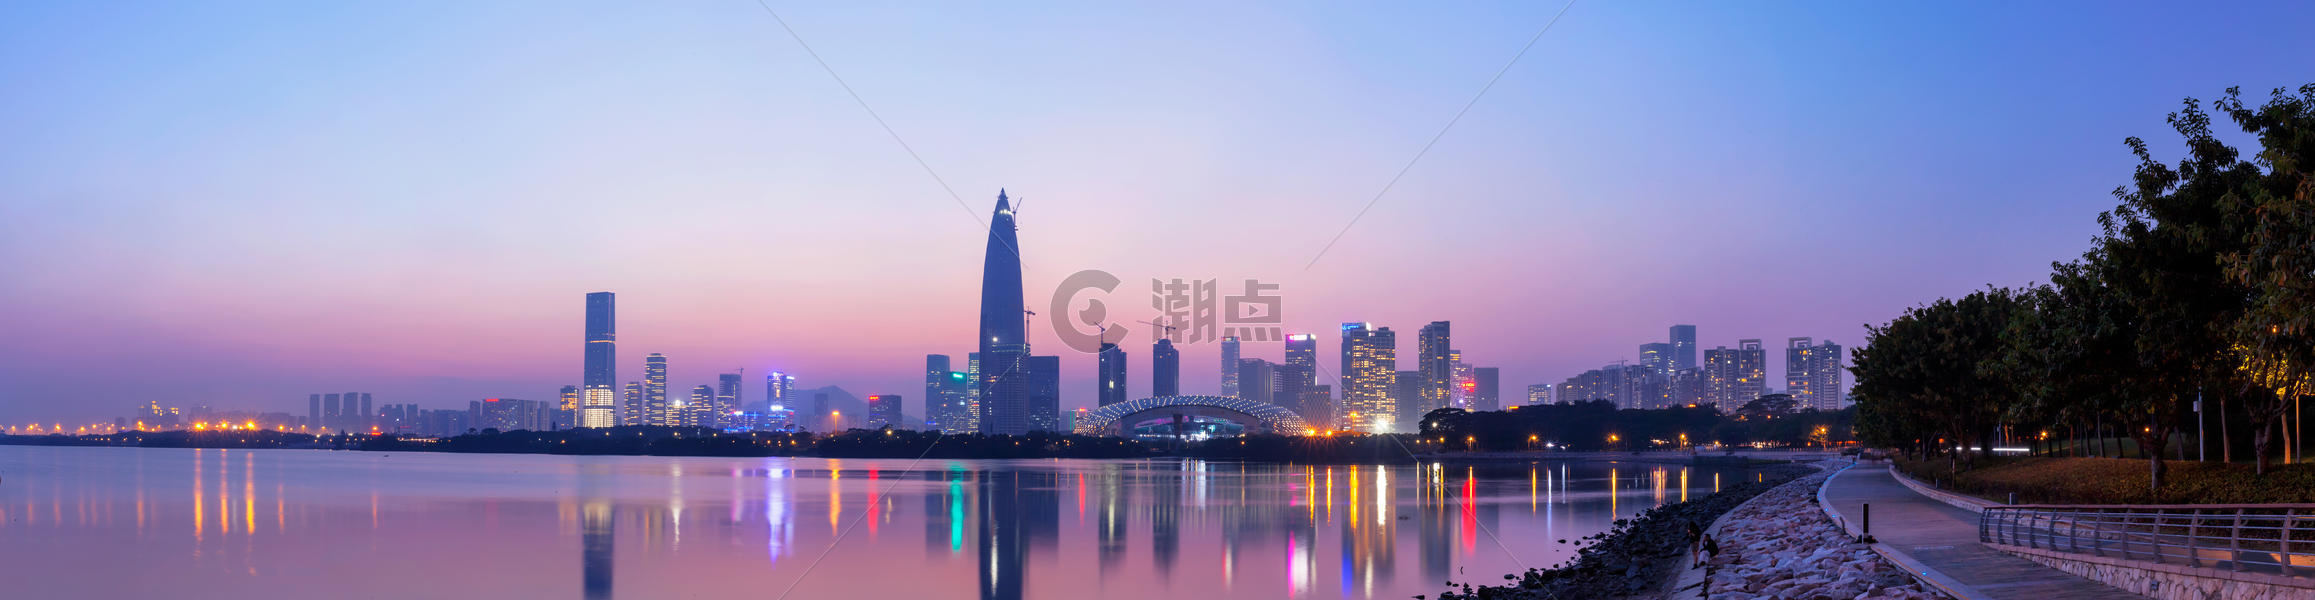 深圳湾夜景图片素材免费下载